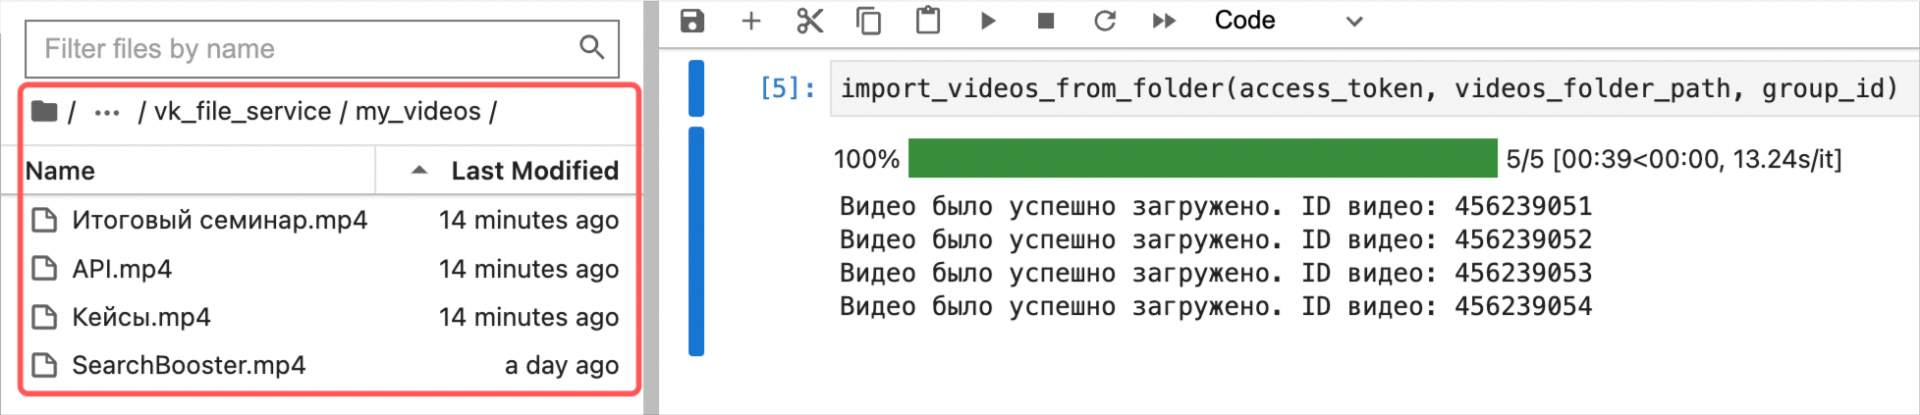 как вызывается функции для загрузки видео в группу в Вконтакте